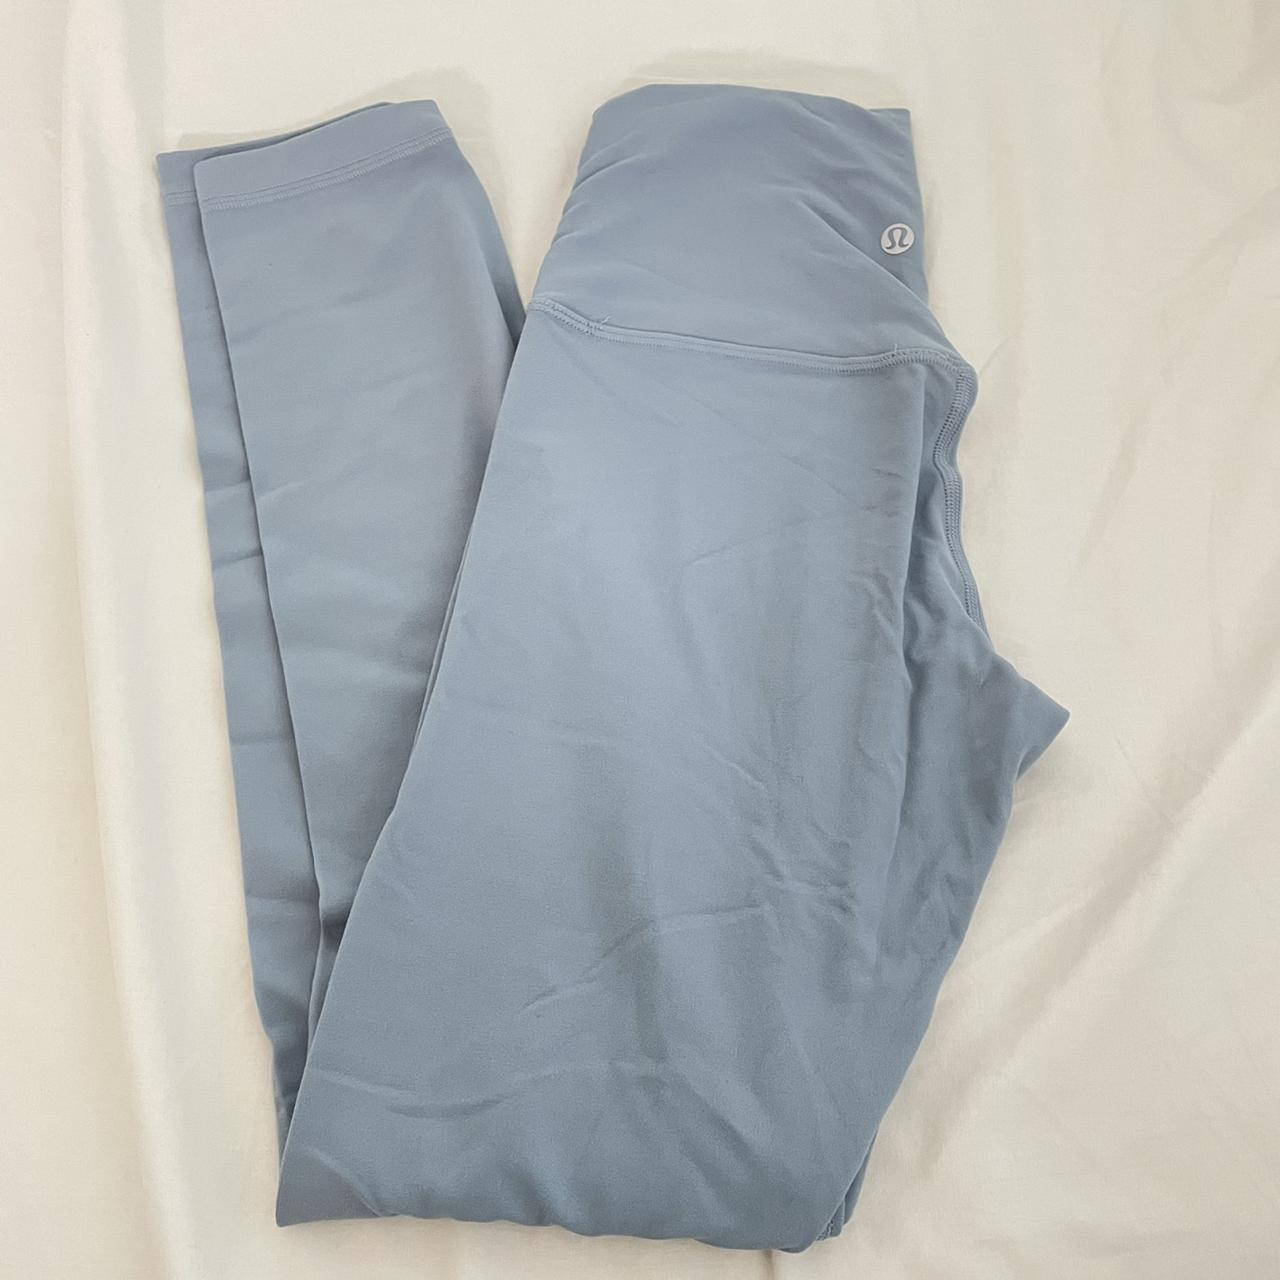 White camo lulu leggings - size 8 - 25 in inseam - - Depop